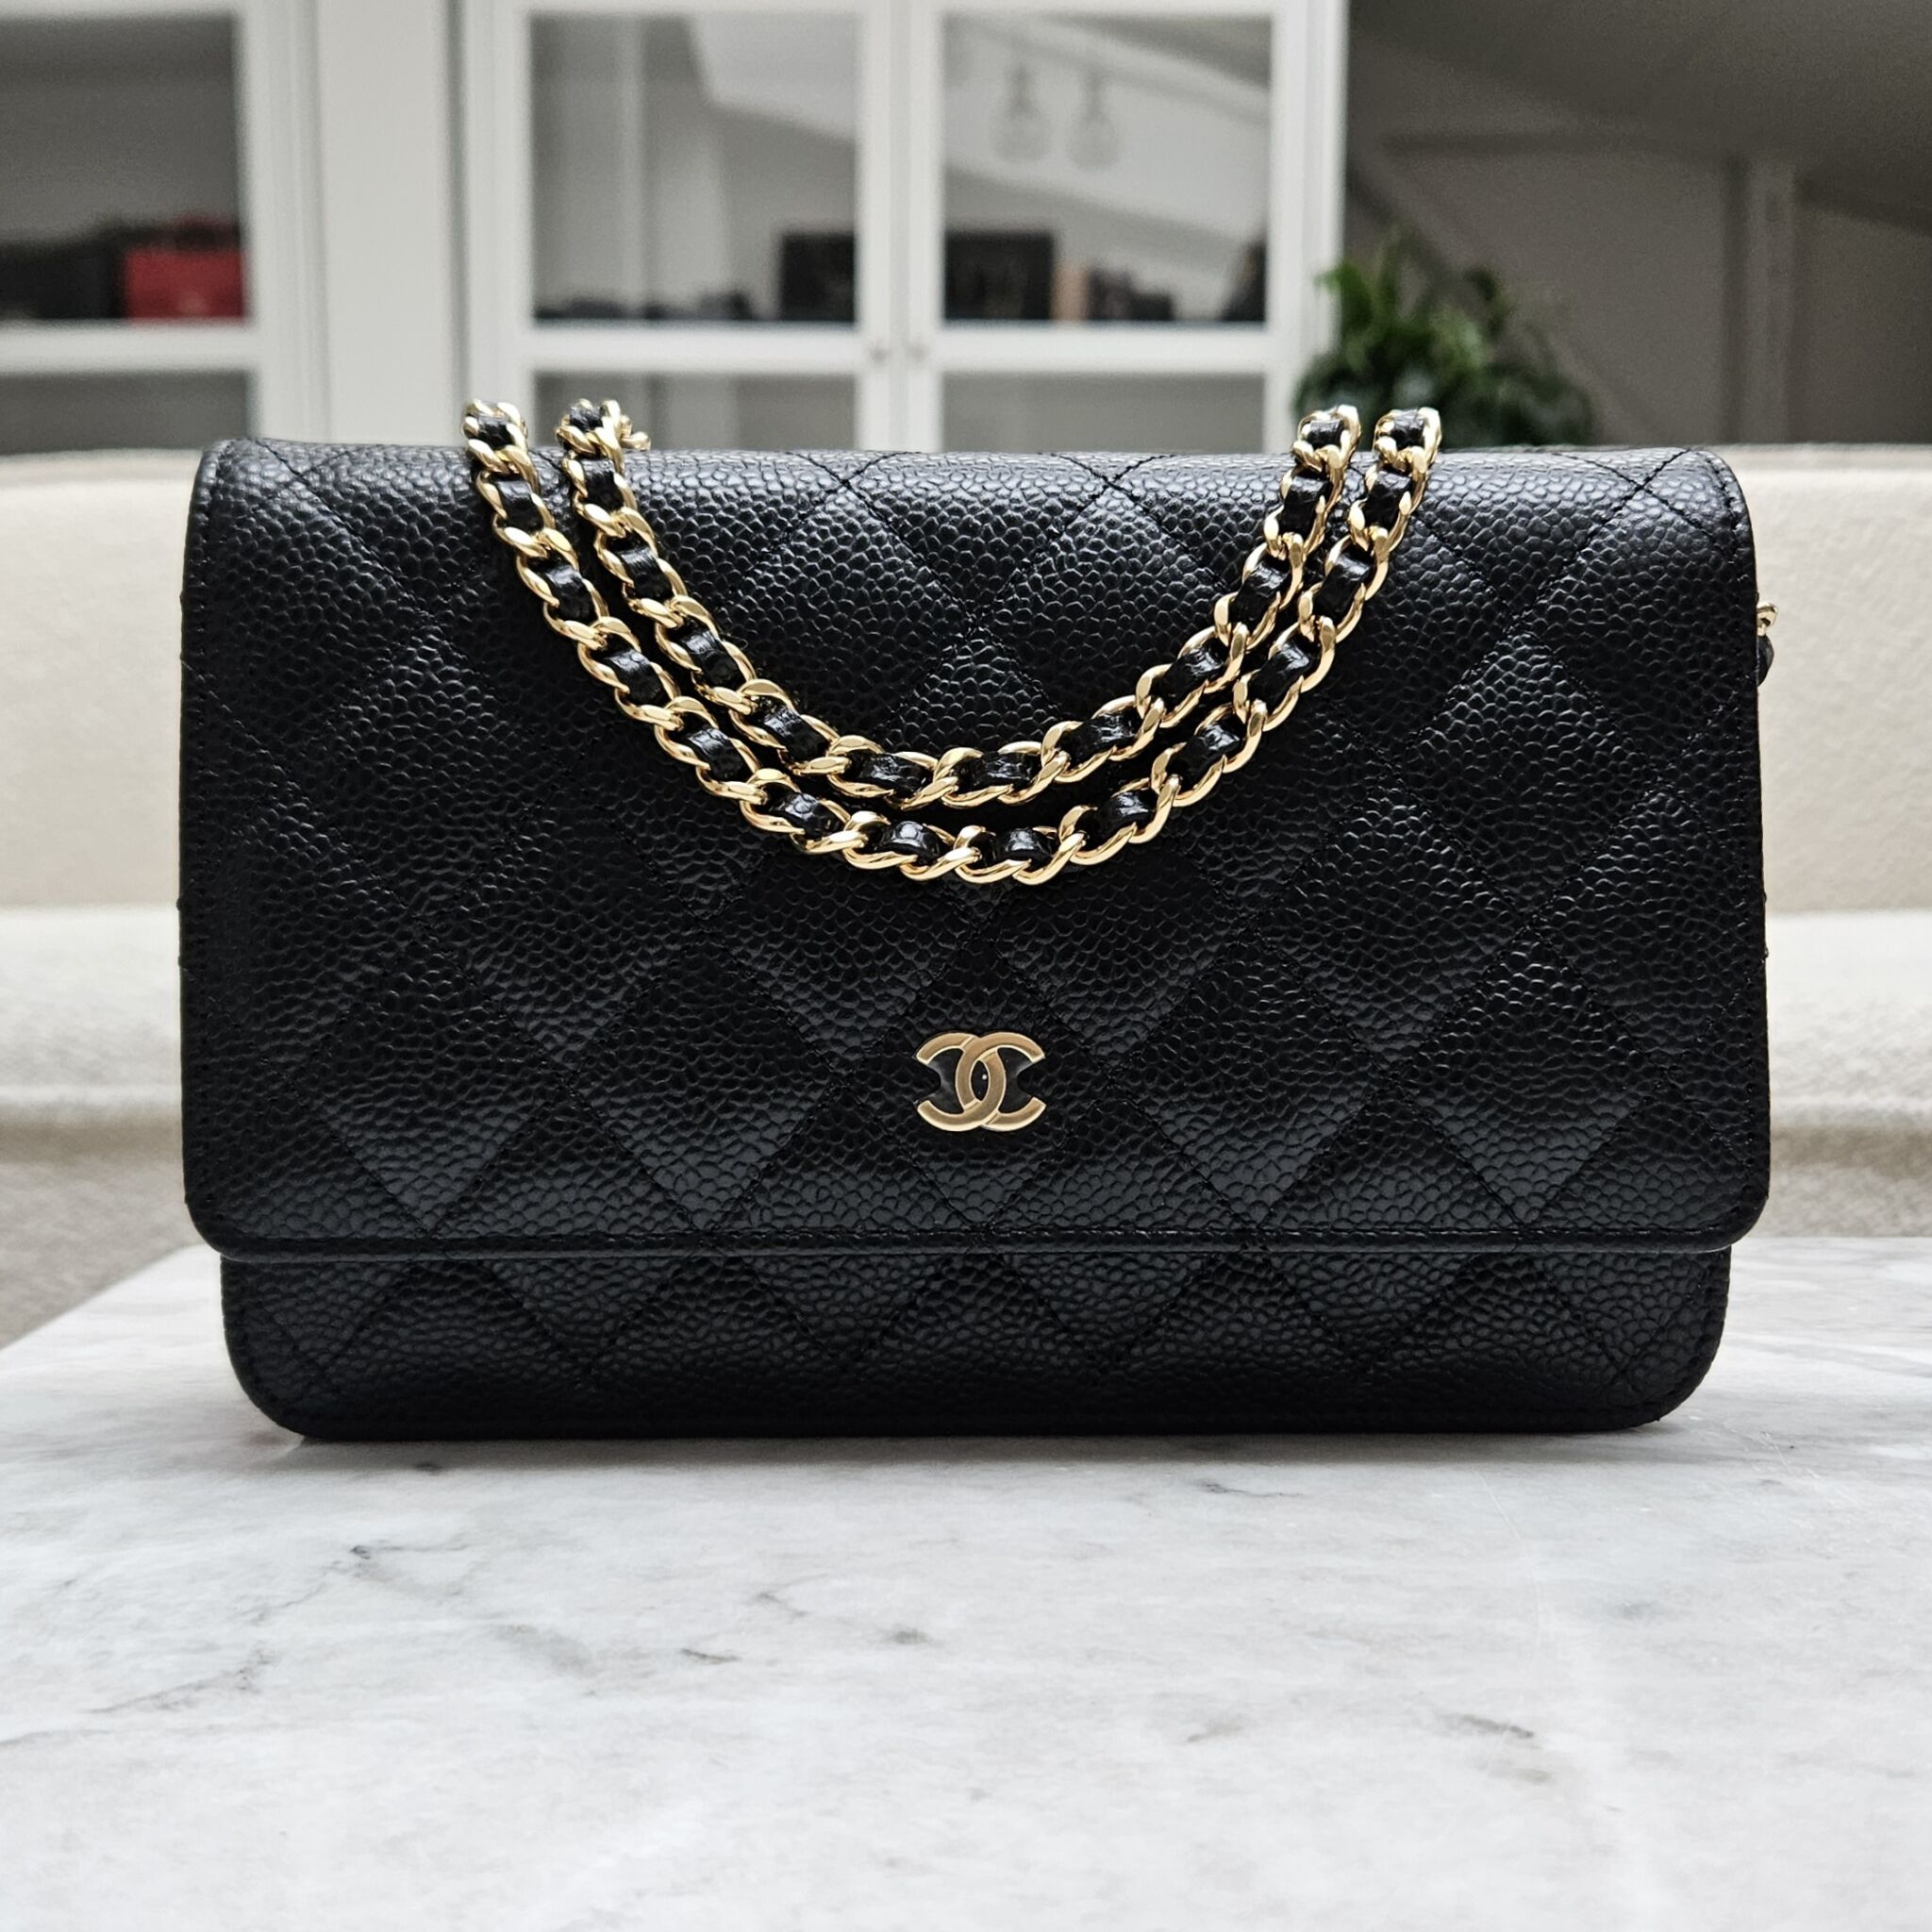 Chanel WOC, Caviar, Sort GHW - Laulay Luxury